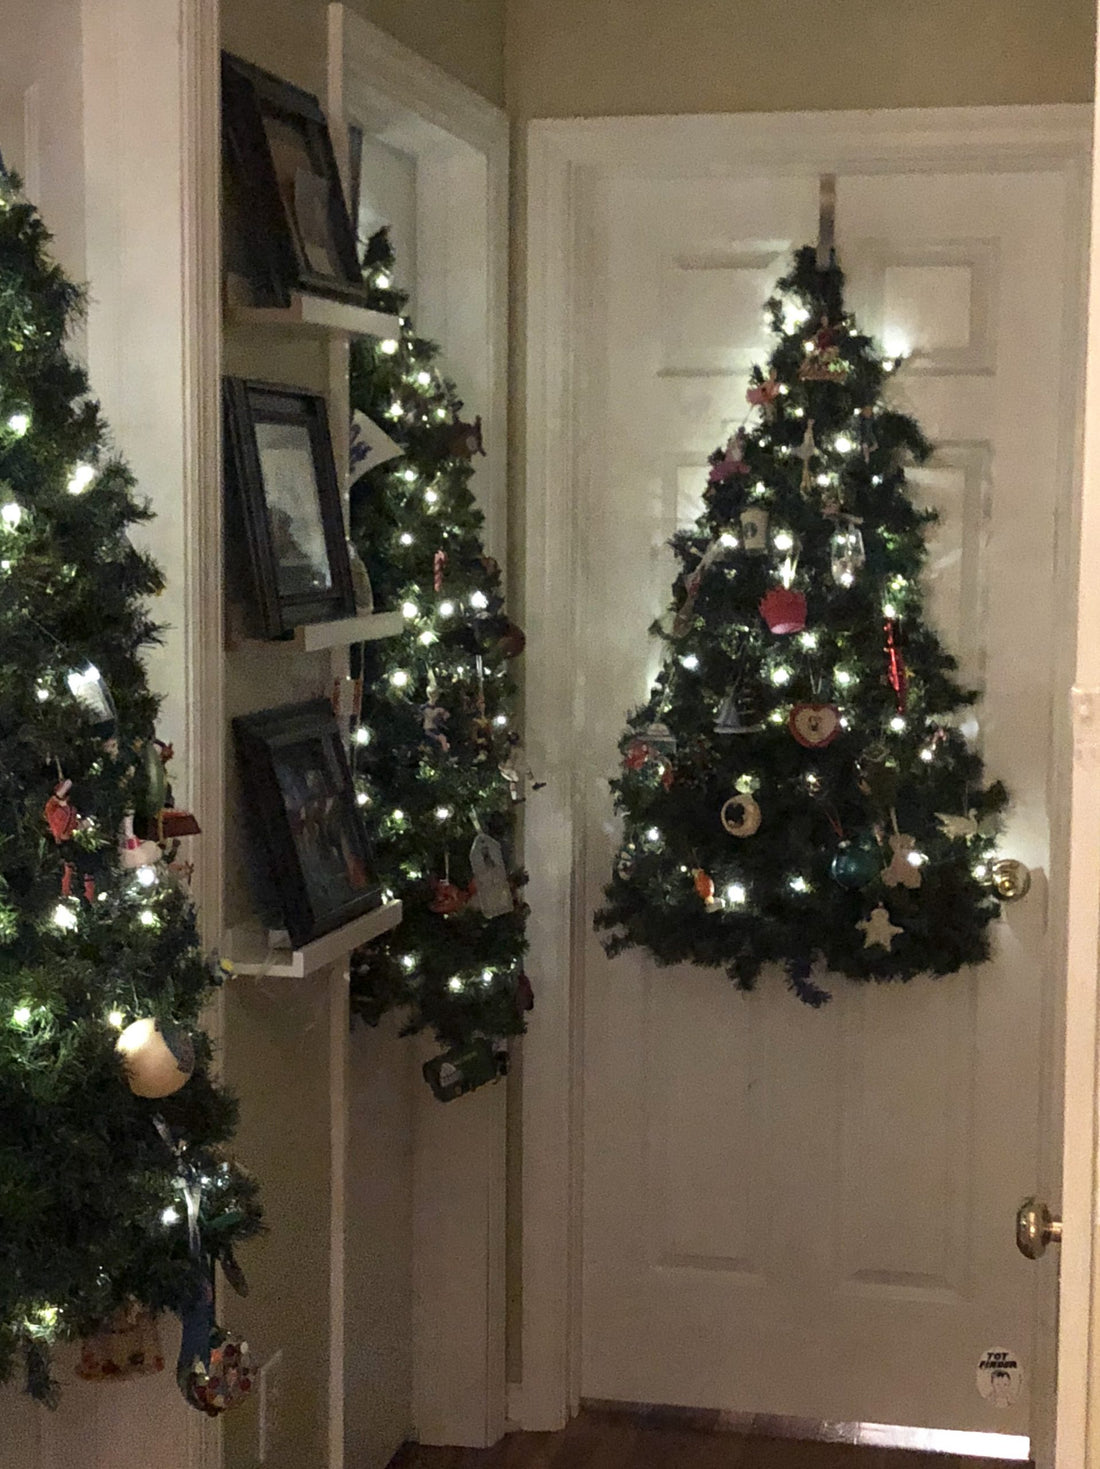 Hanging Christmas Door Trees!